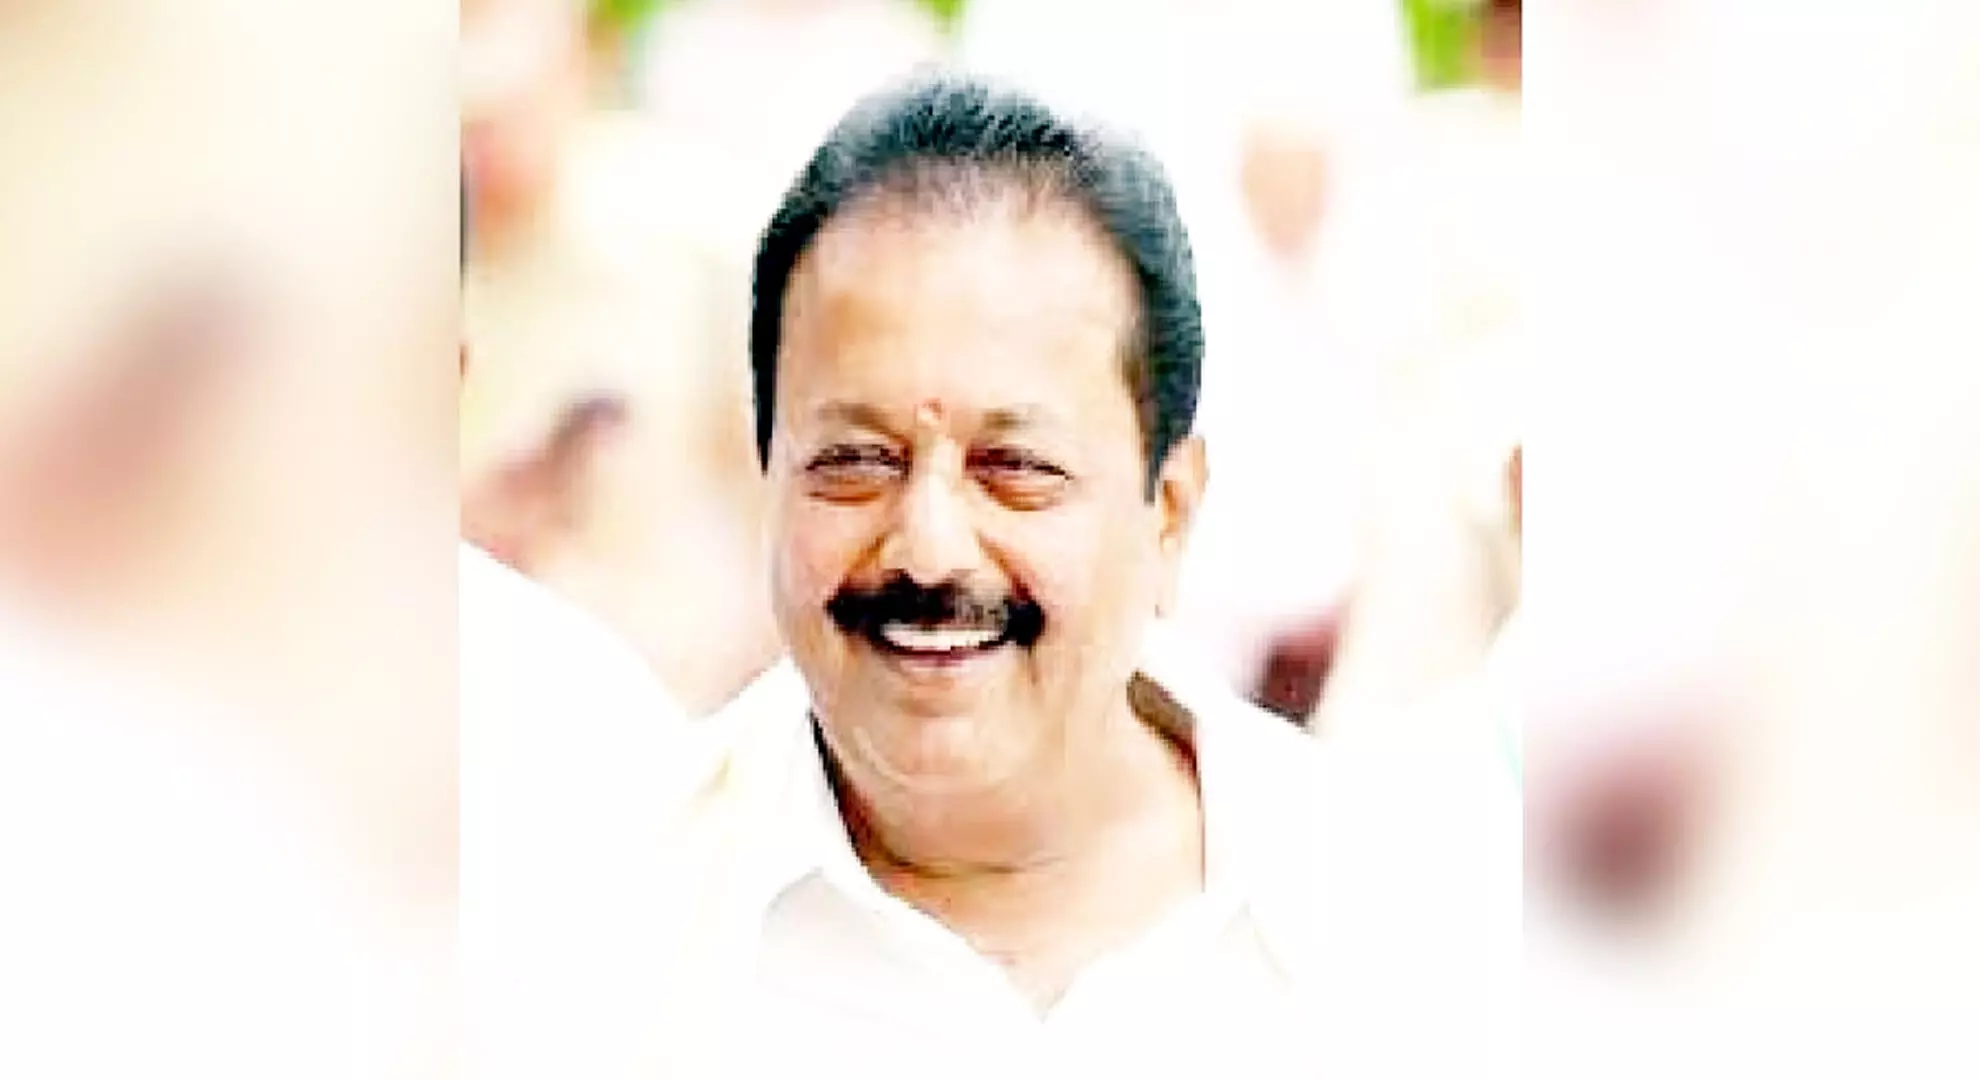 मतदाता एचडीके को स्वीकार नहीं करेंगे: कर्नाटक के मंत्री चालुवरायस्वामी